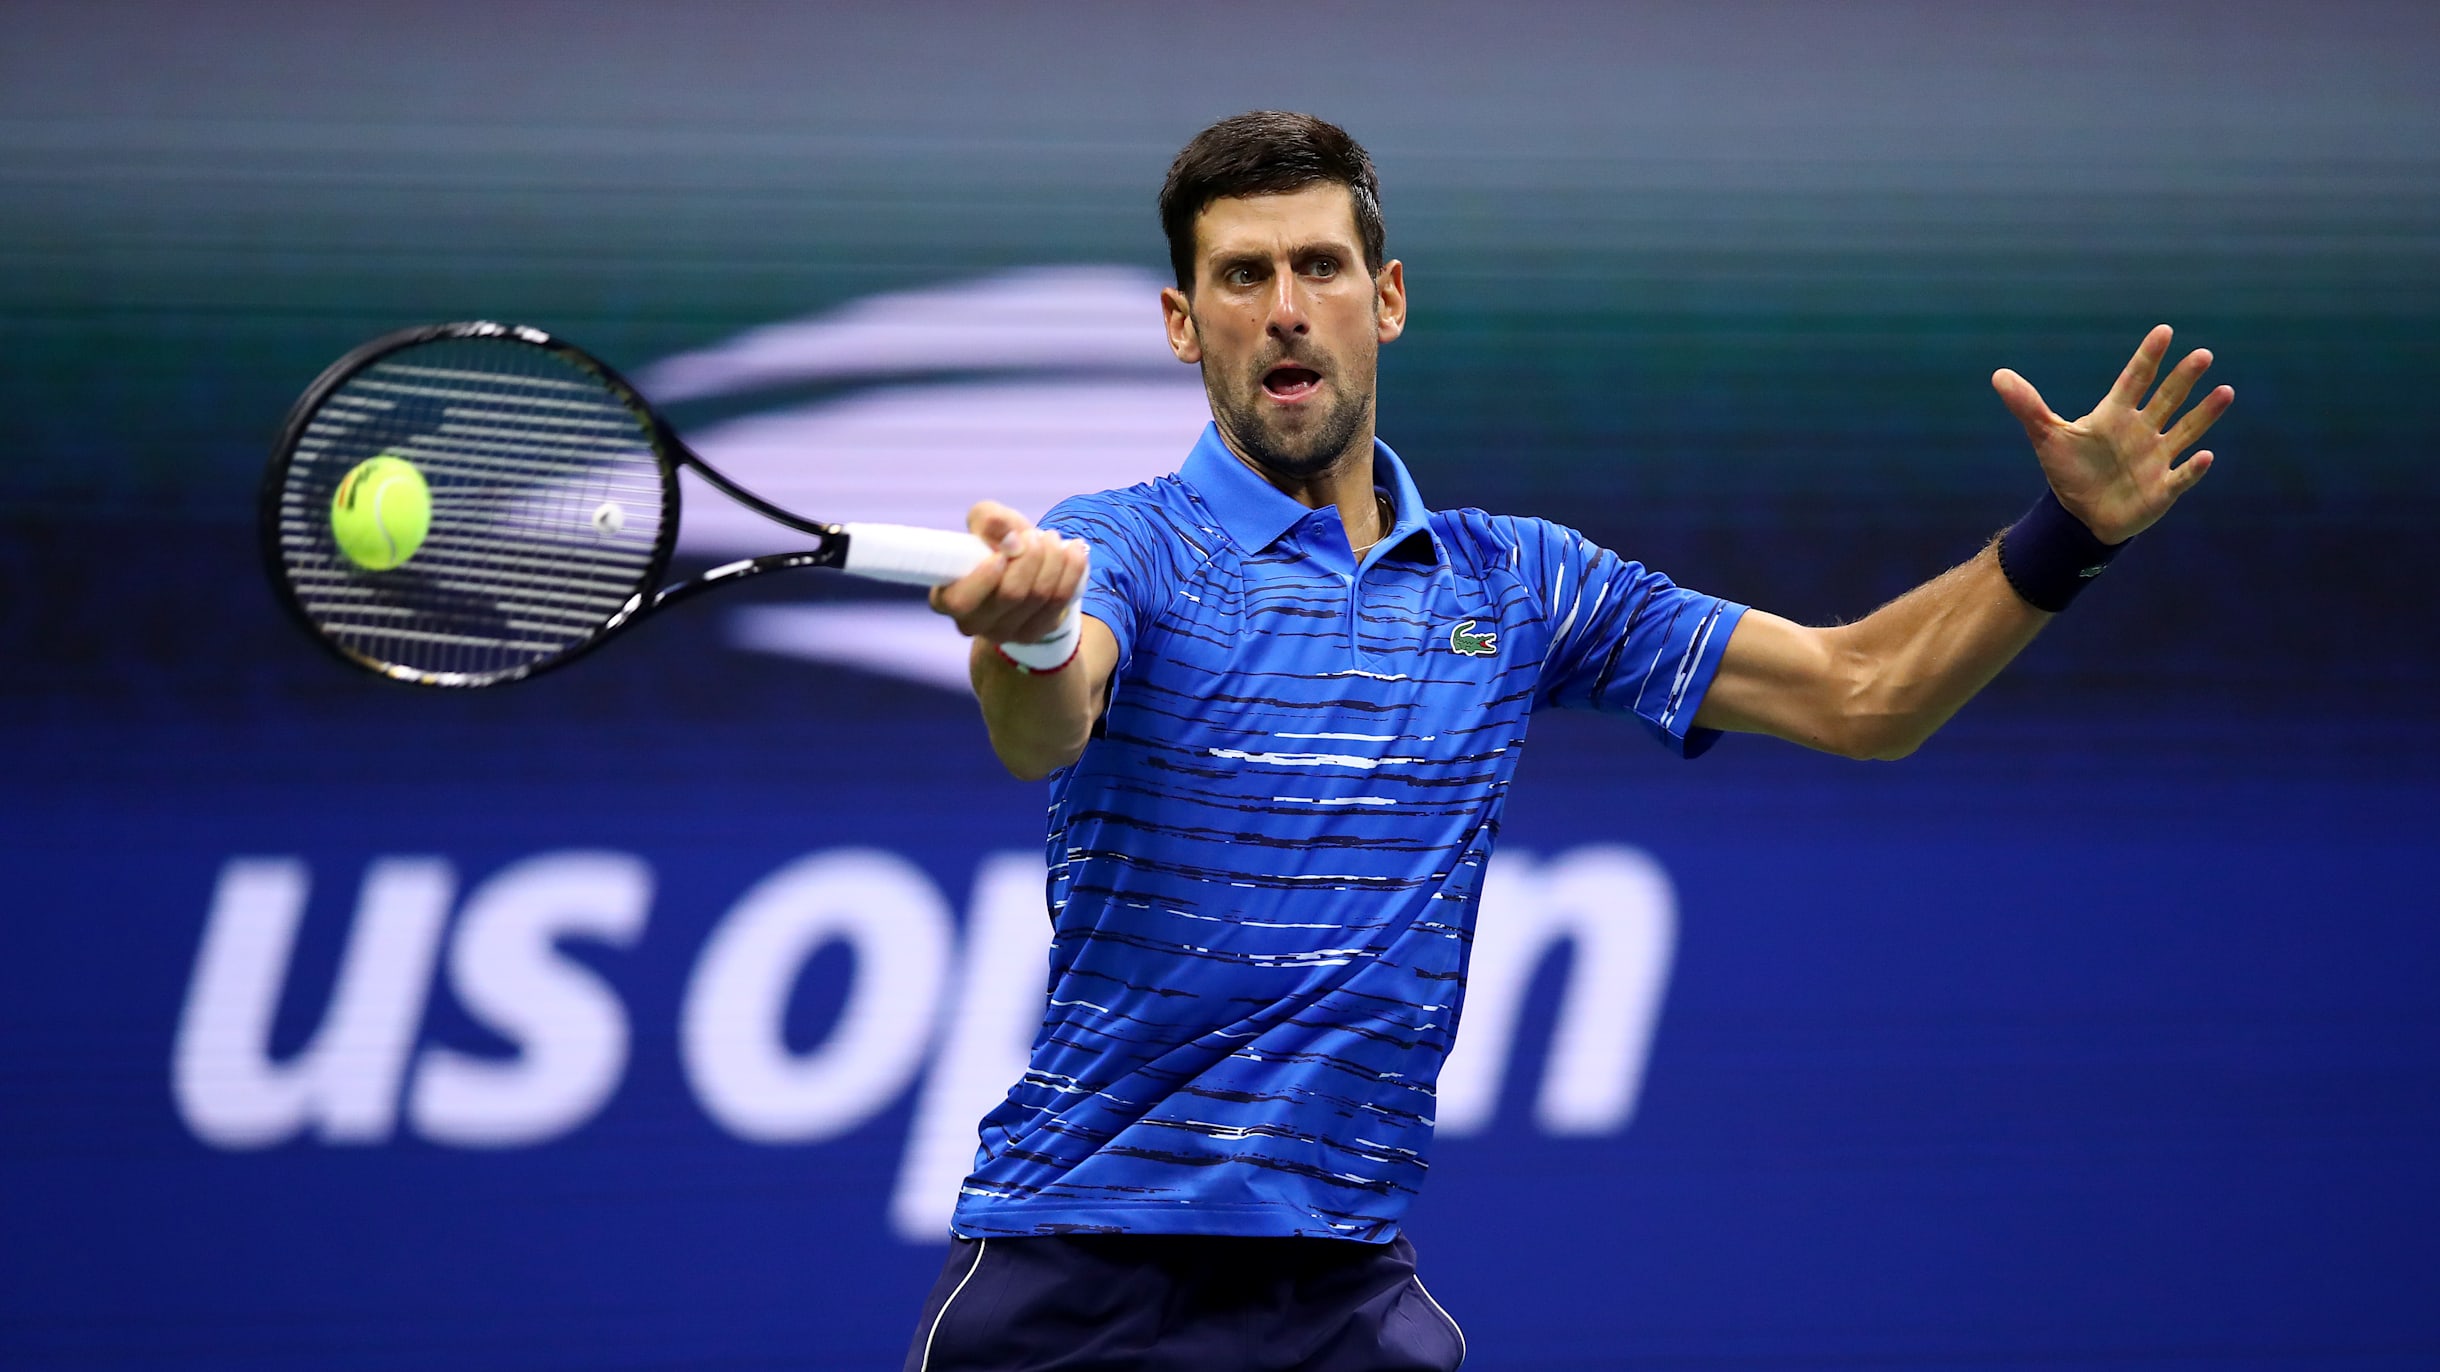 Novak Djokovic vs Daniil Medvedev, watch US Open 2021 mens singles final live streaming and telecast in India